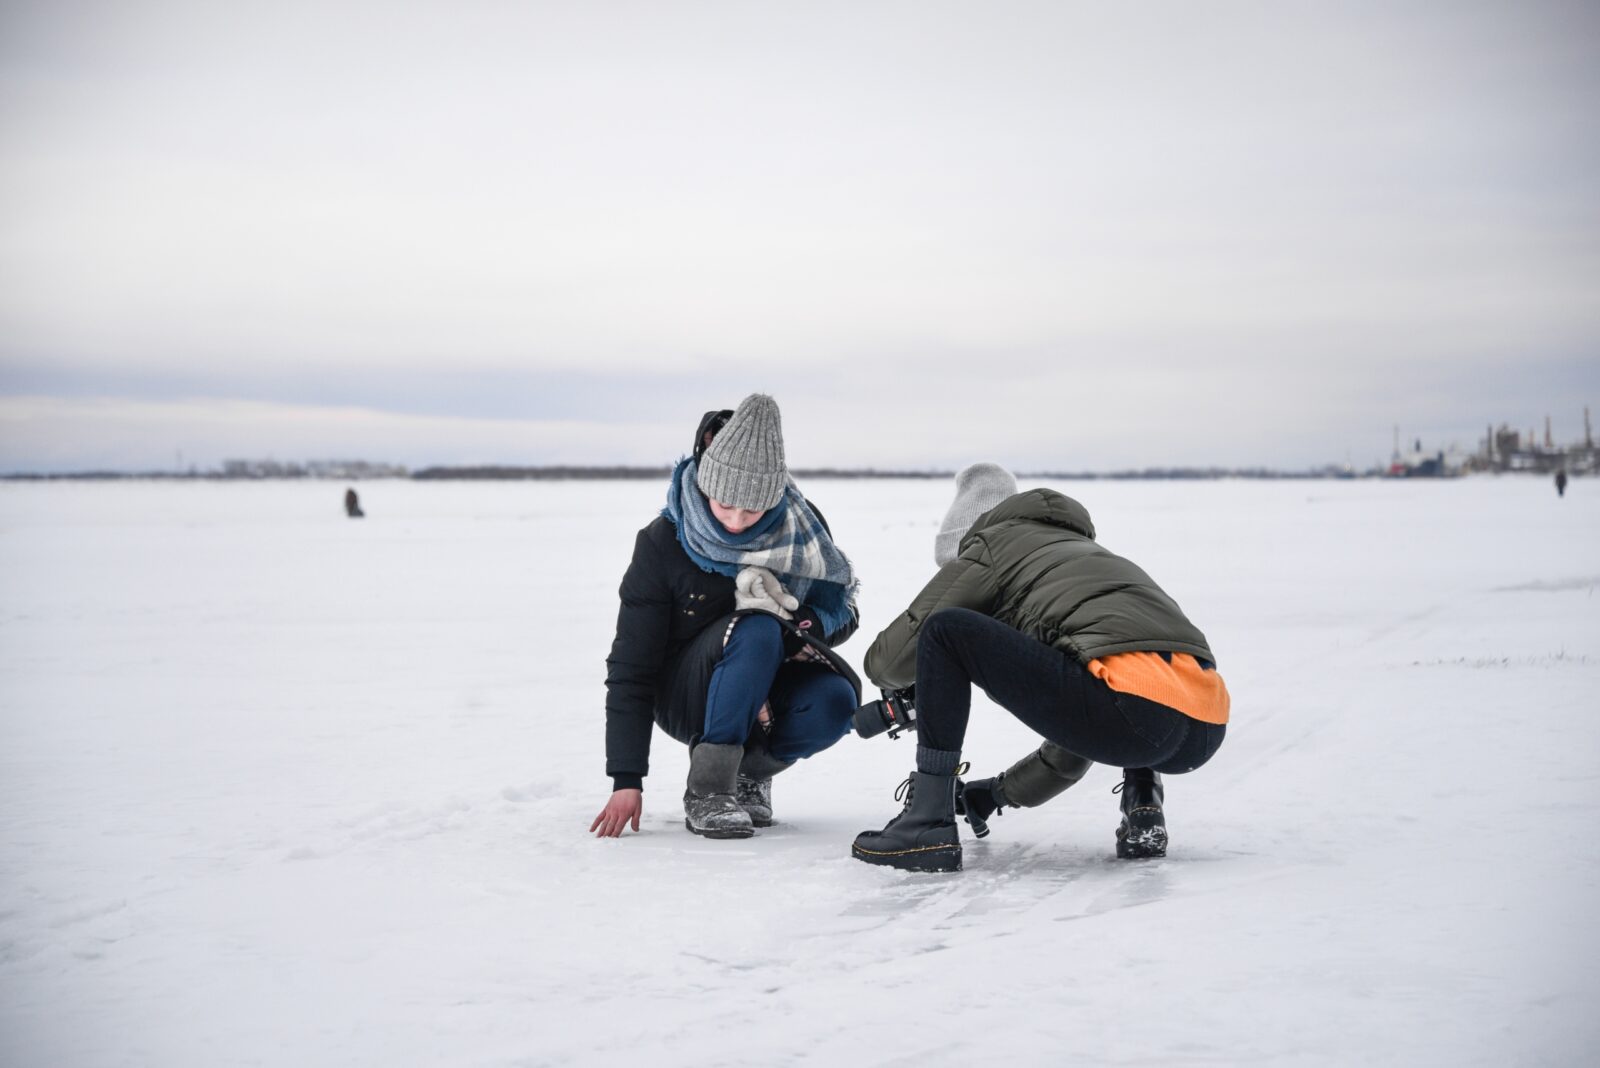 Лаборатория по съемкам природы впервые пройдет на фестивале Arctic open в Архангельске